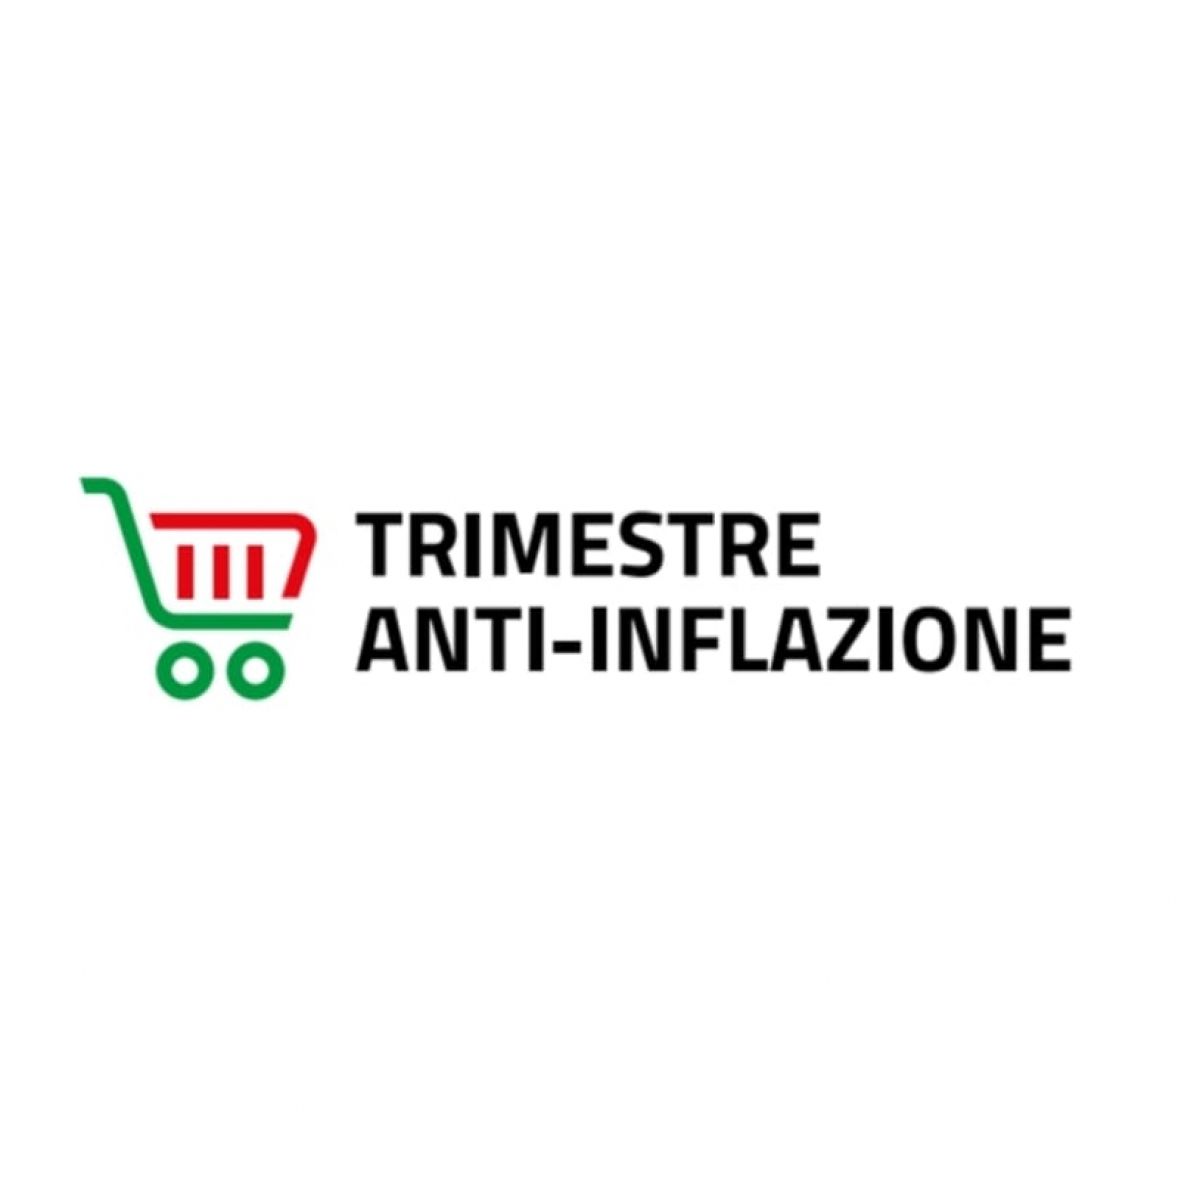 Adesione Trimestre Antiflazione